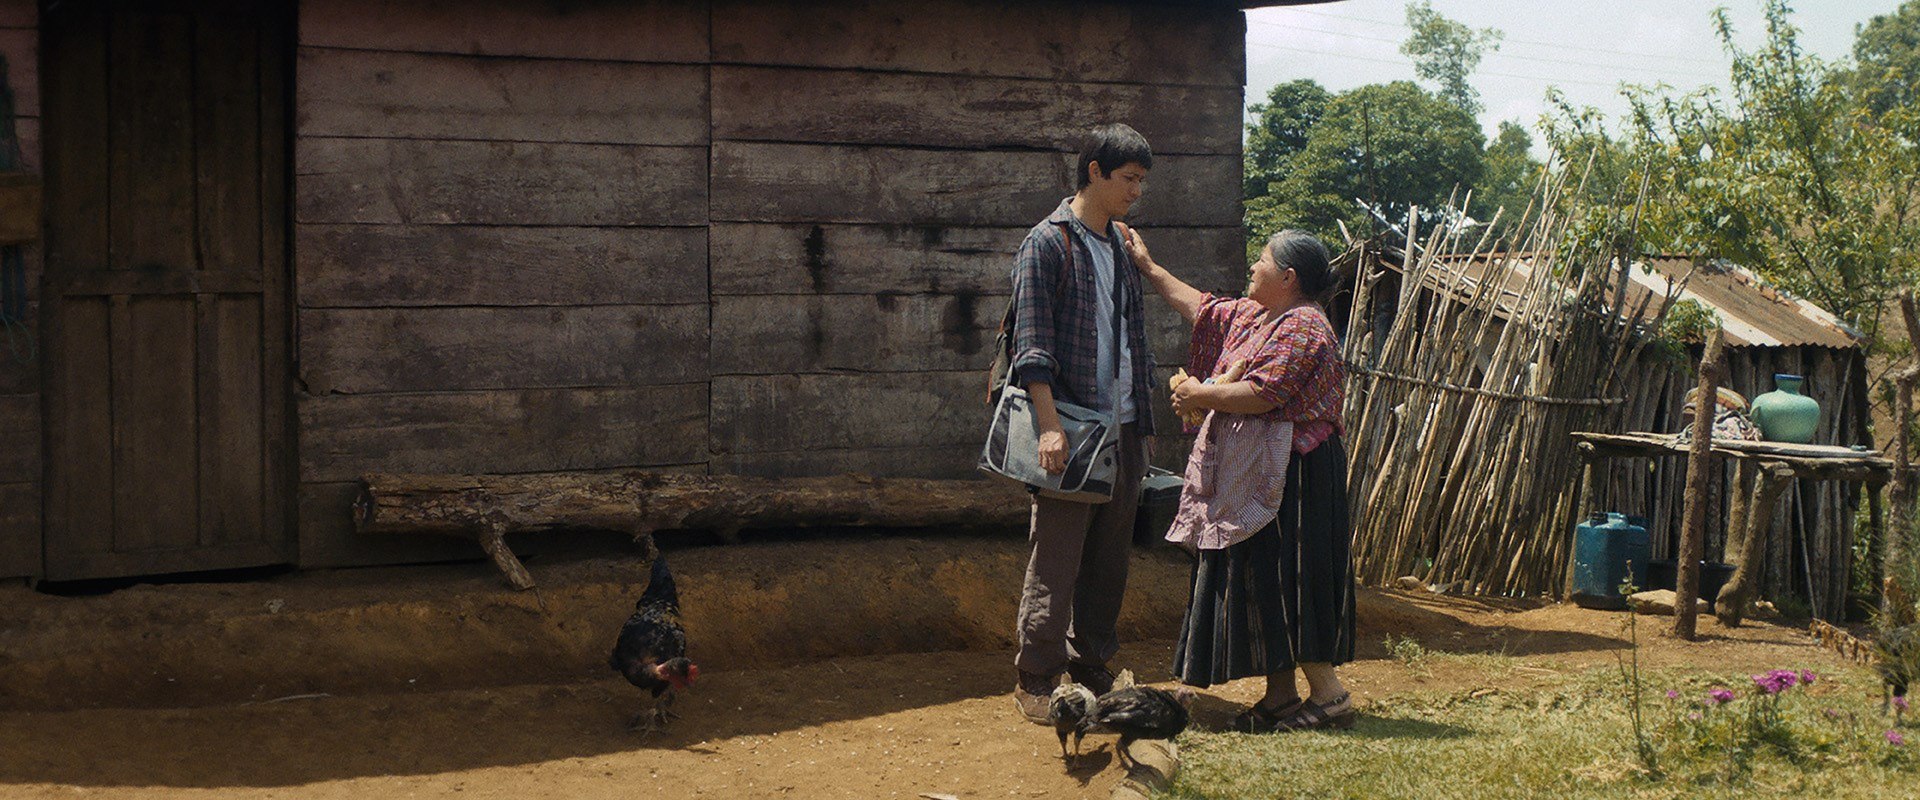 Fotograma del la película "Nuestras madres", del director guatemalteco César Díaz. (Foto Prensa Libre: EFE)